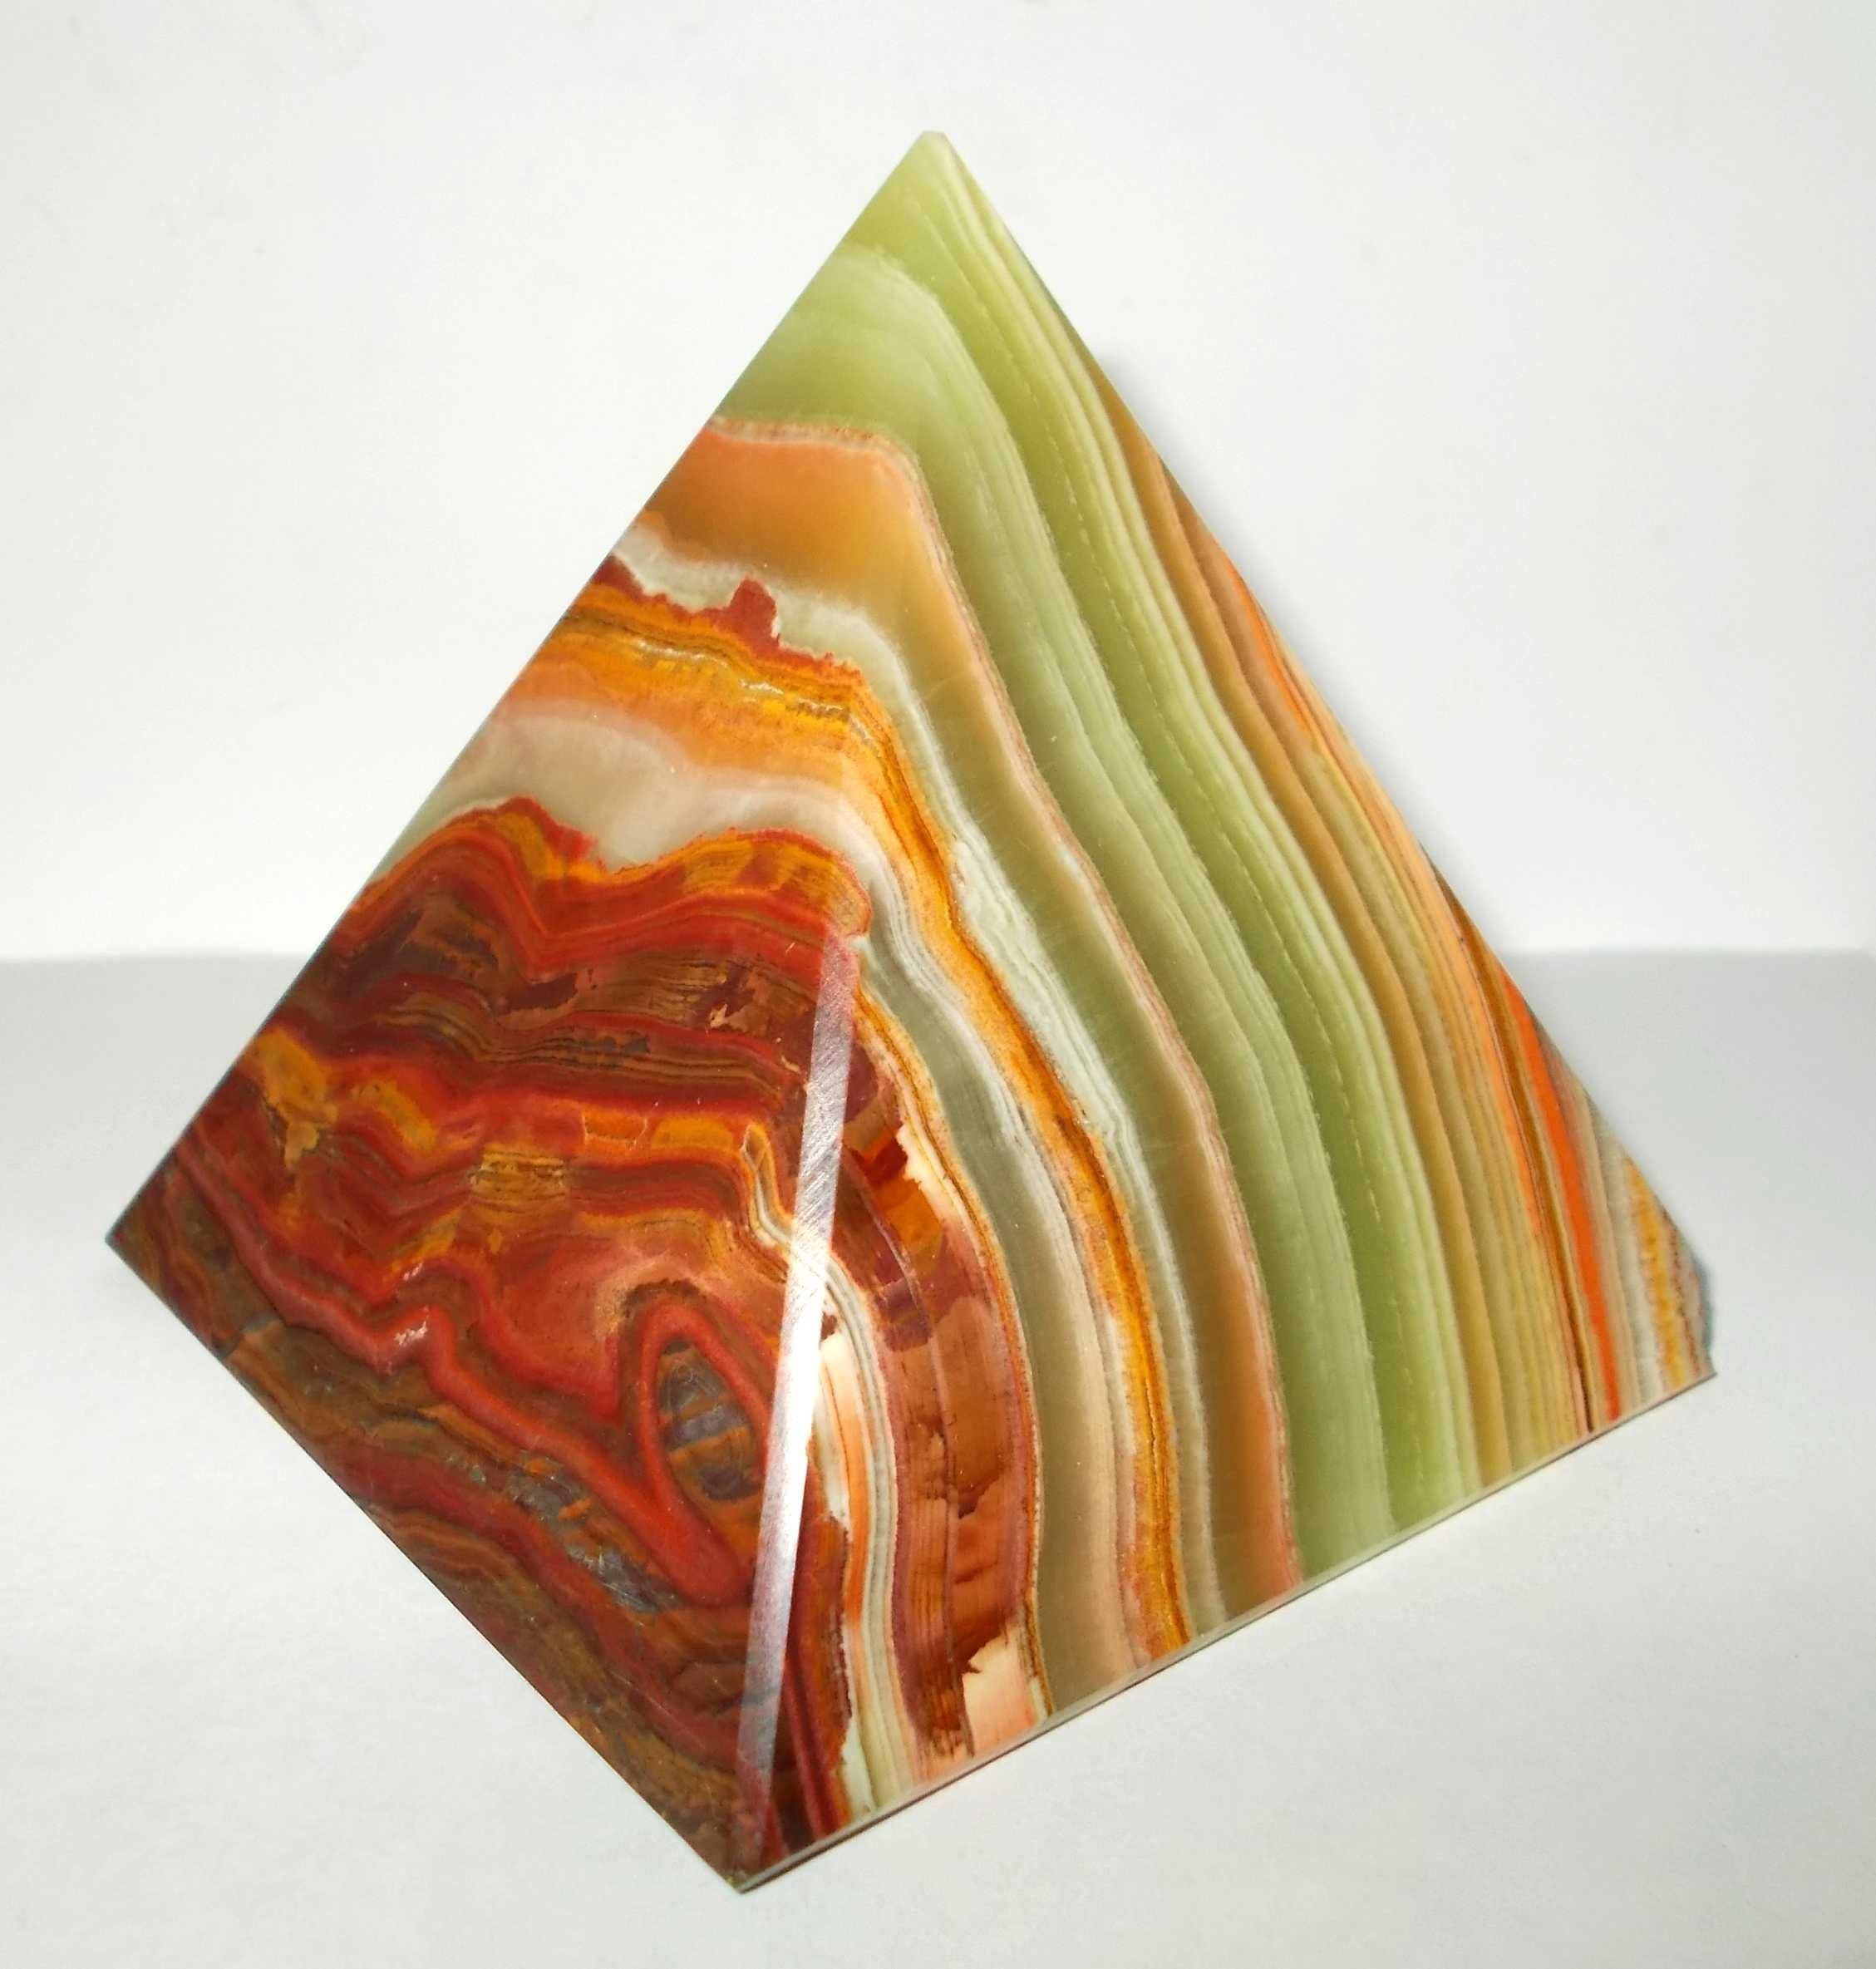 Kamienna piramida - onyks pakistański (7,5 cm) - WYJĄTKOWA